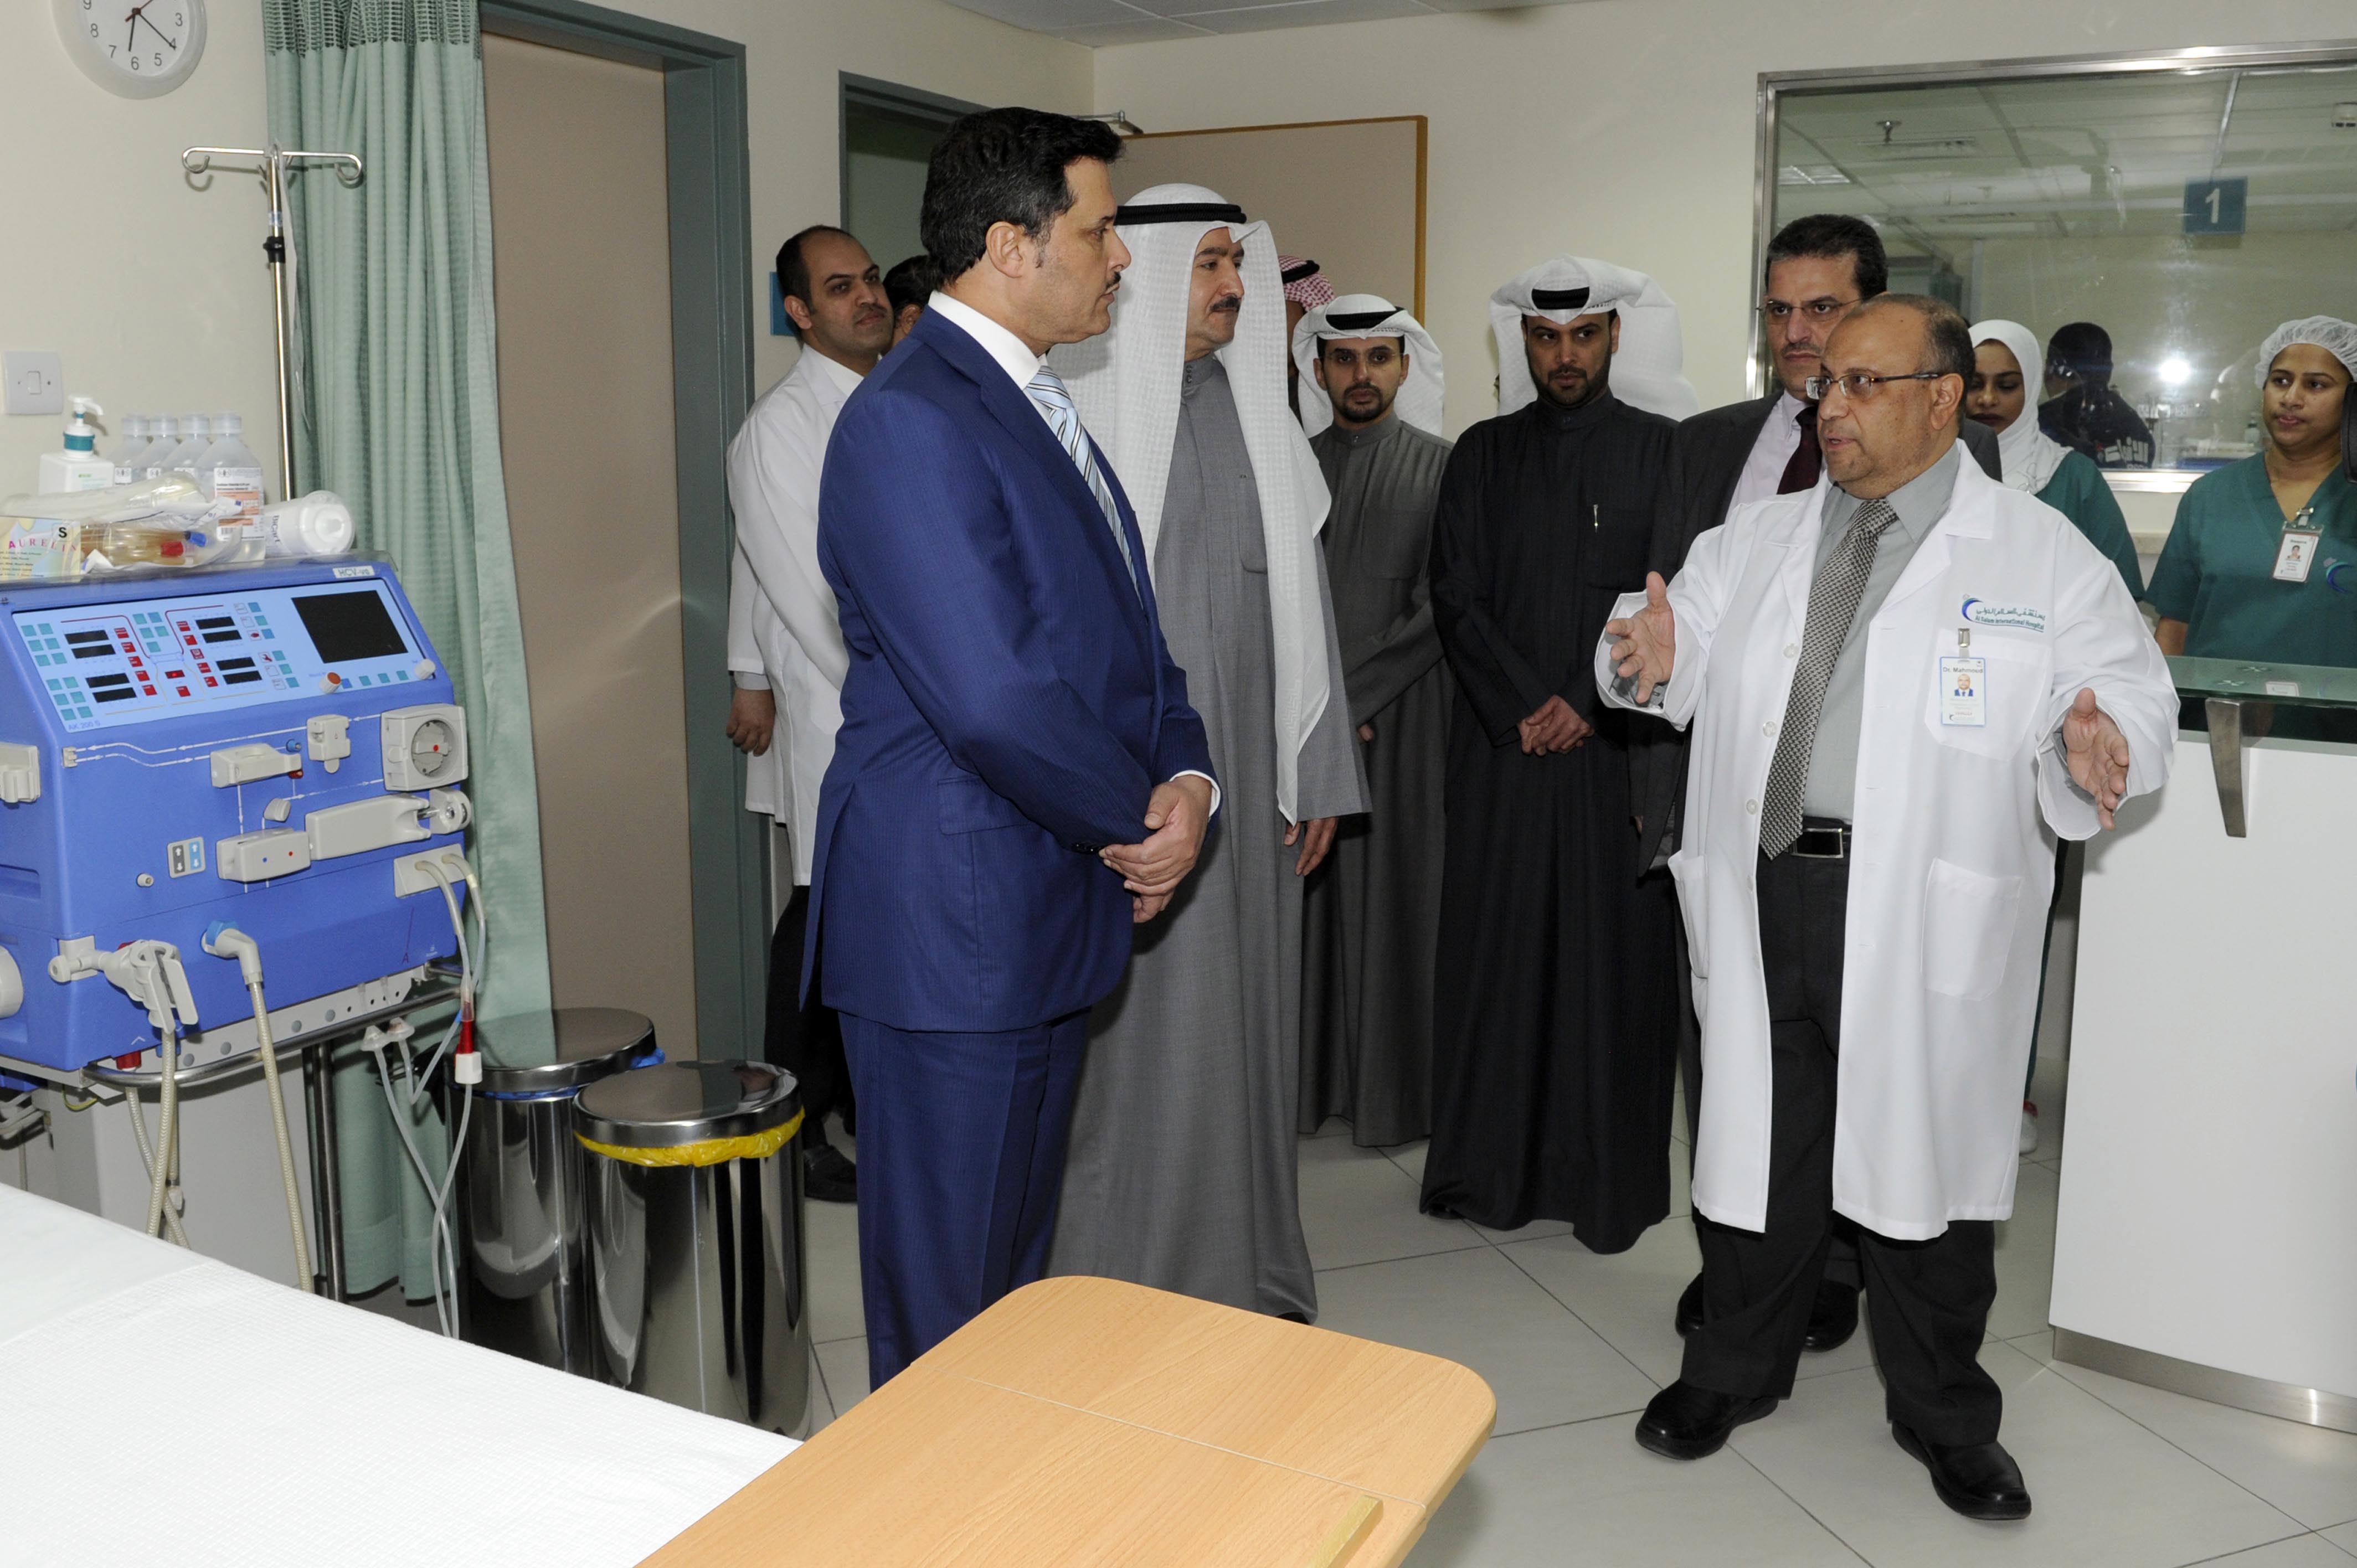 وزير الصحة الدكتور جمال الحربي خلال افتتاحه ثلاثة مراكز طبية للأسنان والكلى والعلاج الطبيعي في مستشفى السلام الدولي